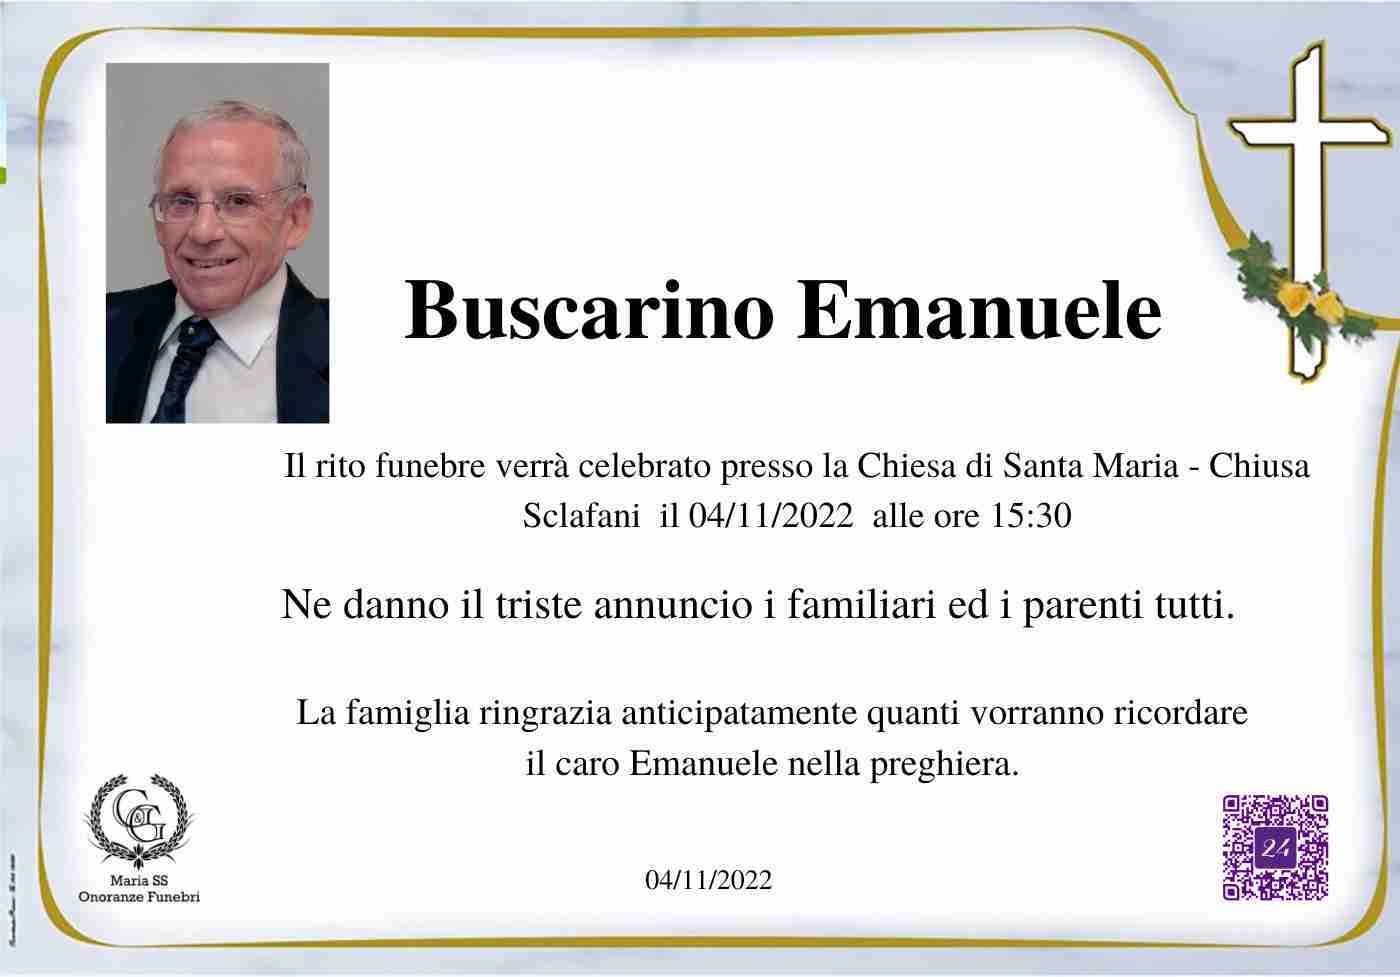 Emanuele Buscarino